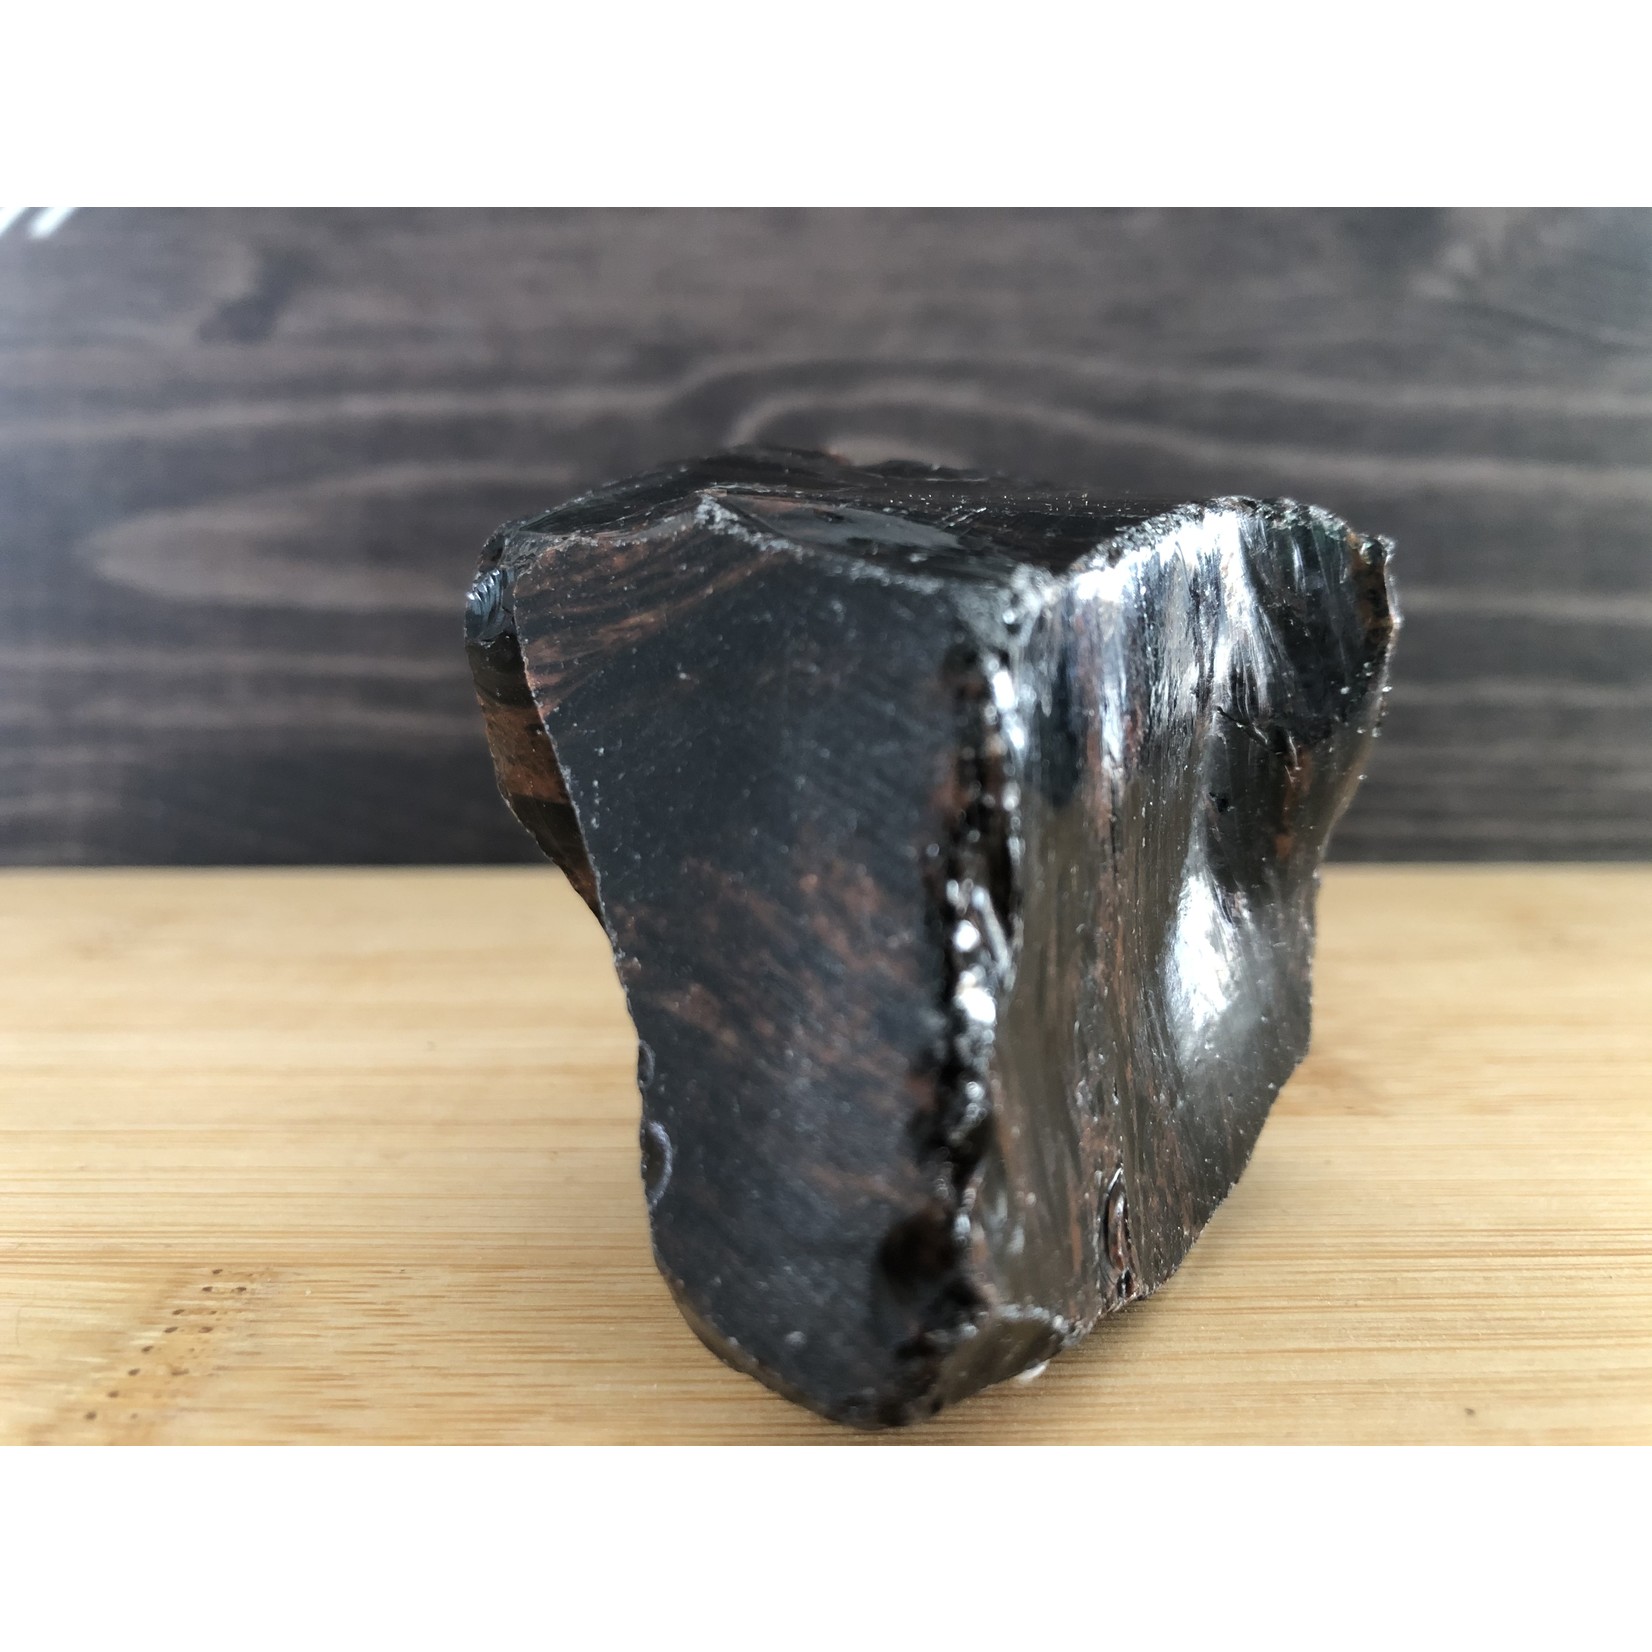 magnifique obsidienne mahogany polie, obsidienne acajou, utilisée pour soulager divers types de douleurs comme courbatures ou crampes musculaires